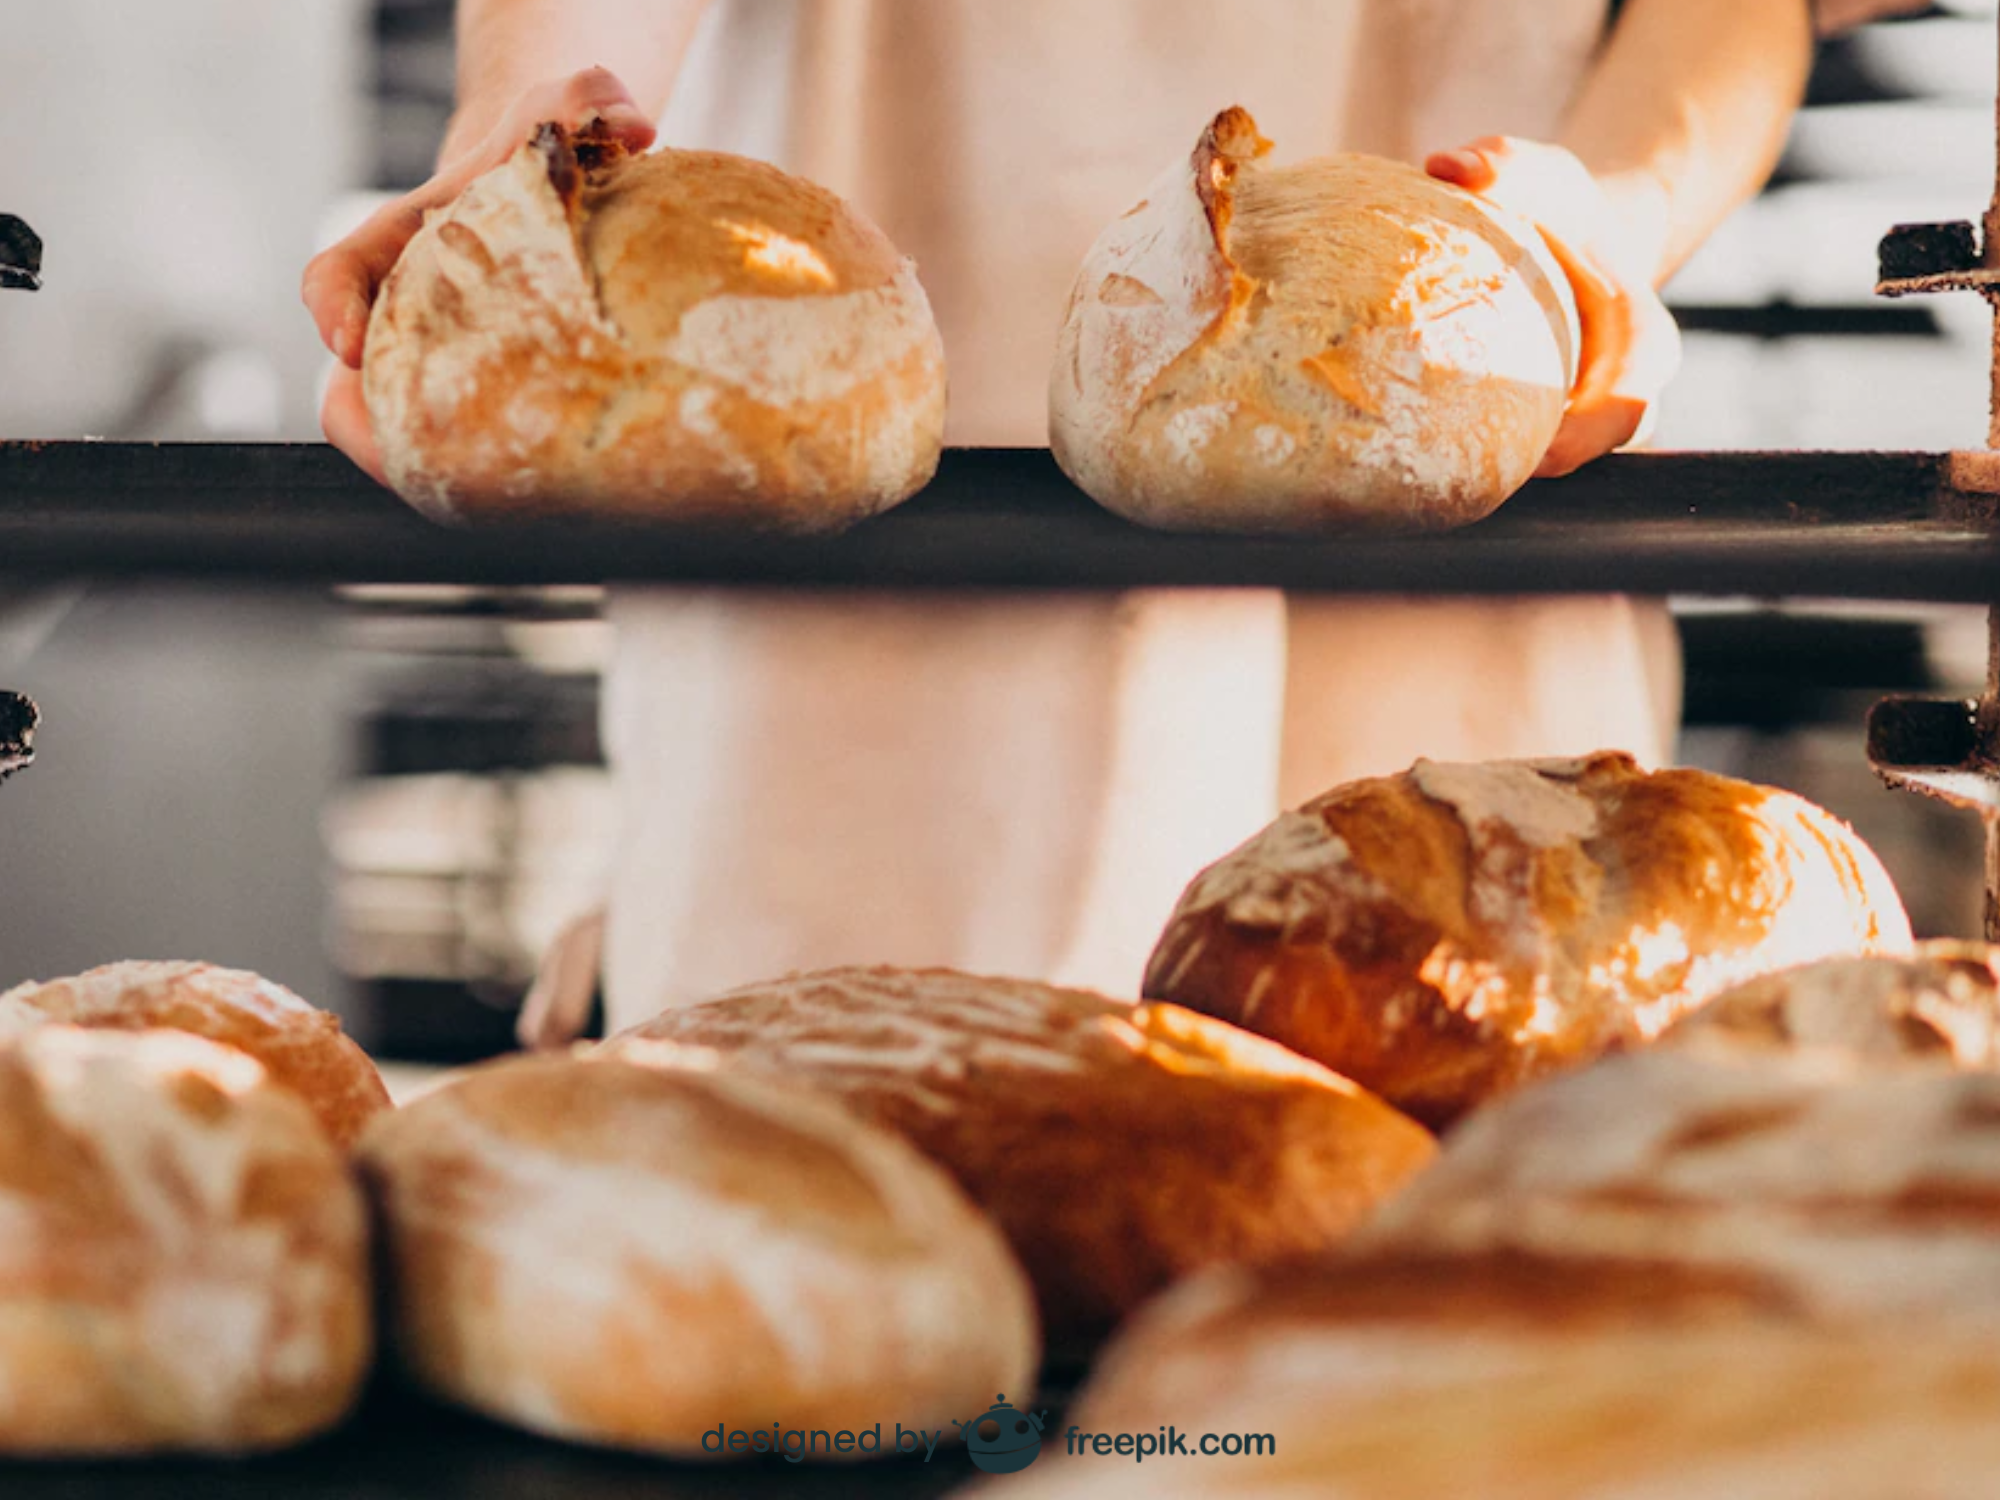 Cheiro de pão fresco deixa as pessoas mais sociáveis, diz pesquisa